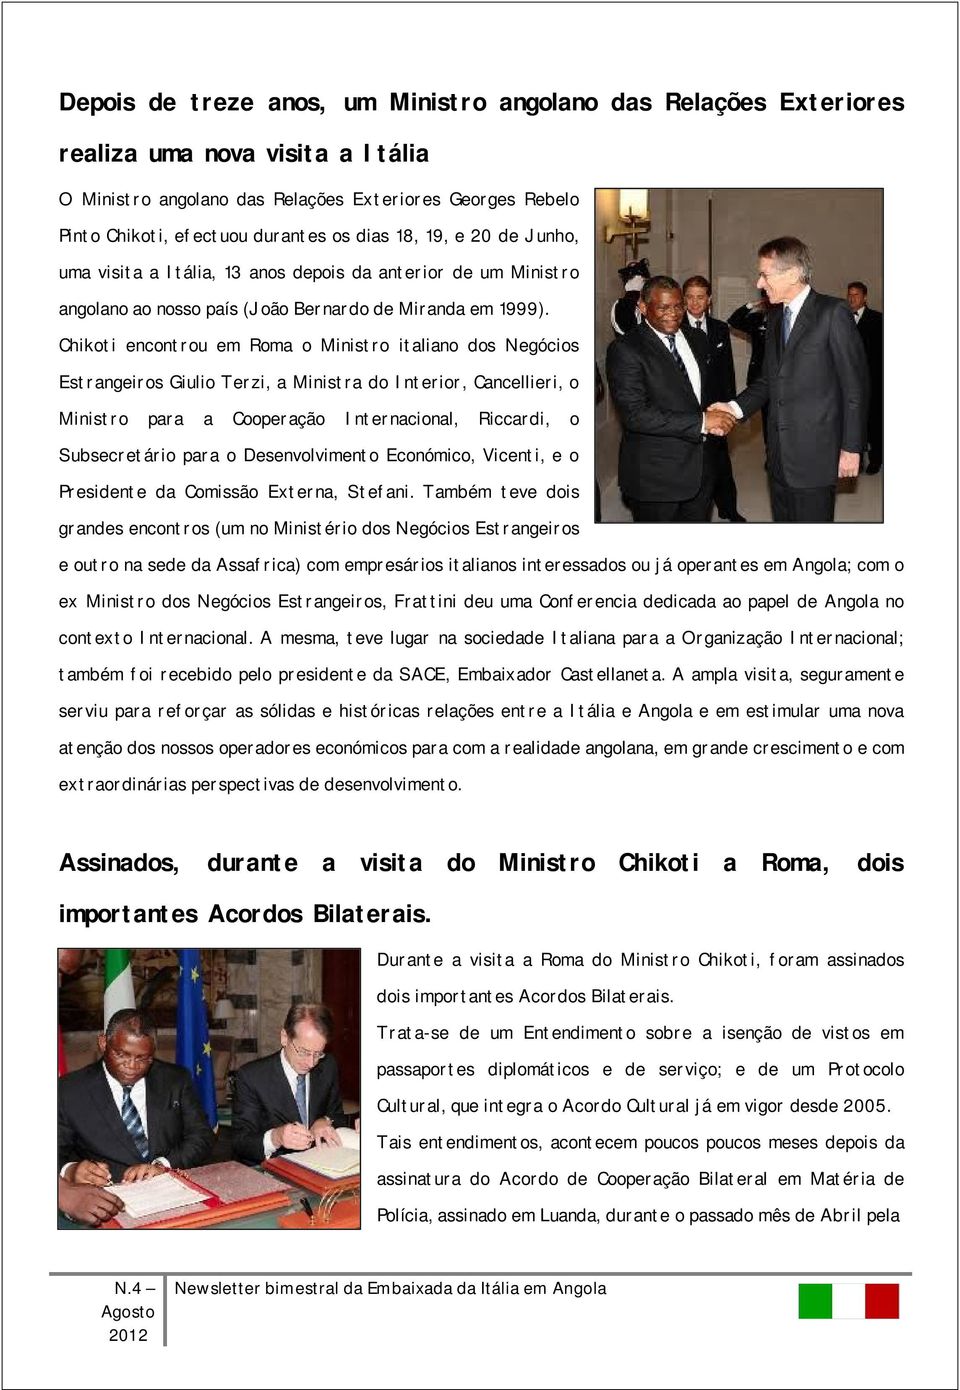 Chikoti encontrou em Roma o Ministro italiano dos Negócios Estrangeiros Giulio Terzi, a Ministra do Interior, Cancellieri, o Ministro para a Cooperação Internacional, Riccardi, o Subsecretário para o